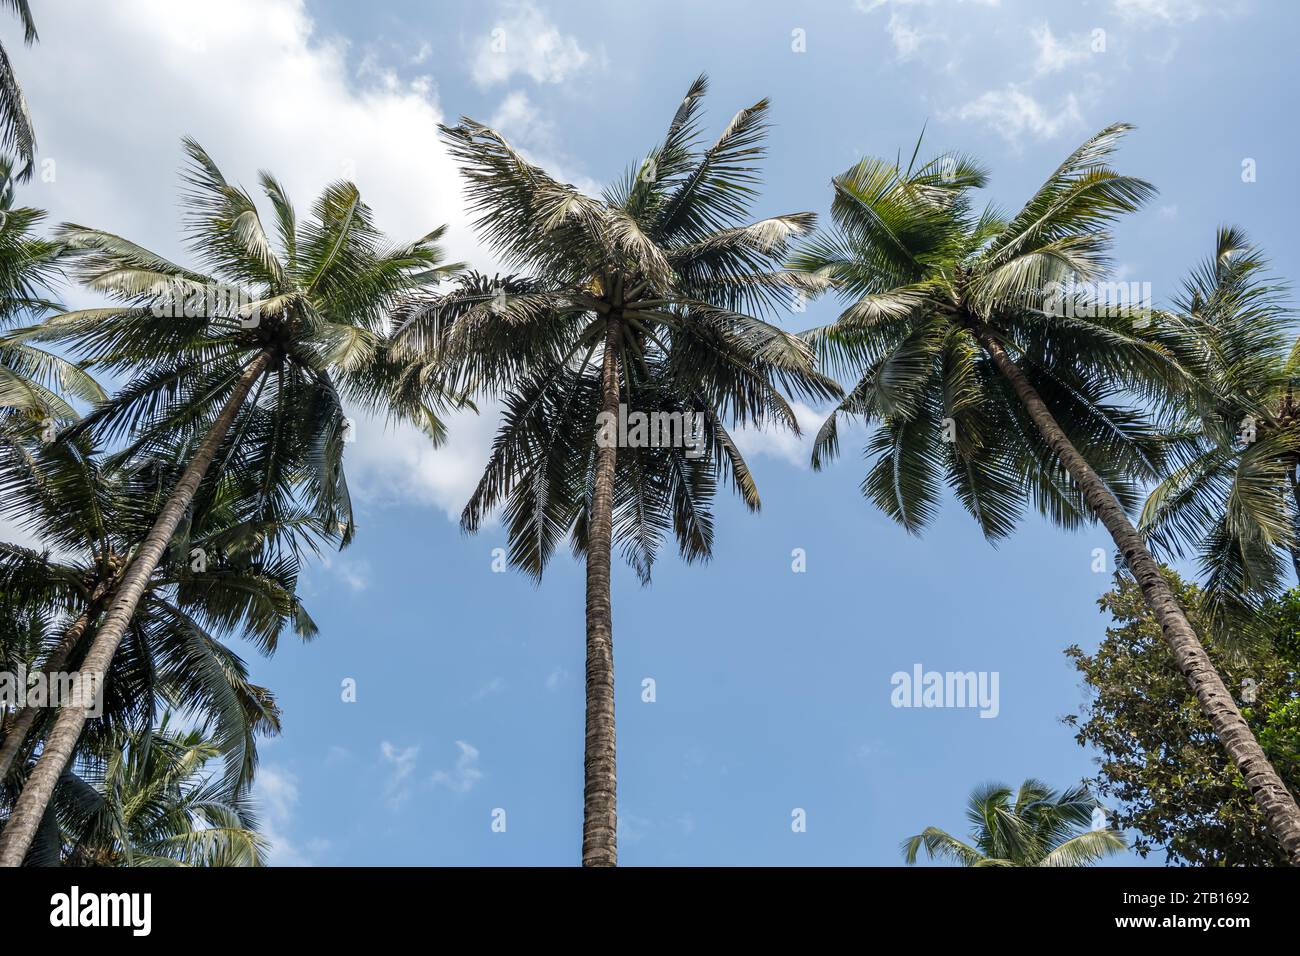 Silhouettes de palmiers de cocotiers contre le ciel bleu de l'Inde avec coucher de soleil Banque D'Images